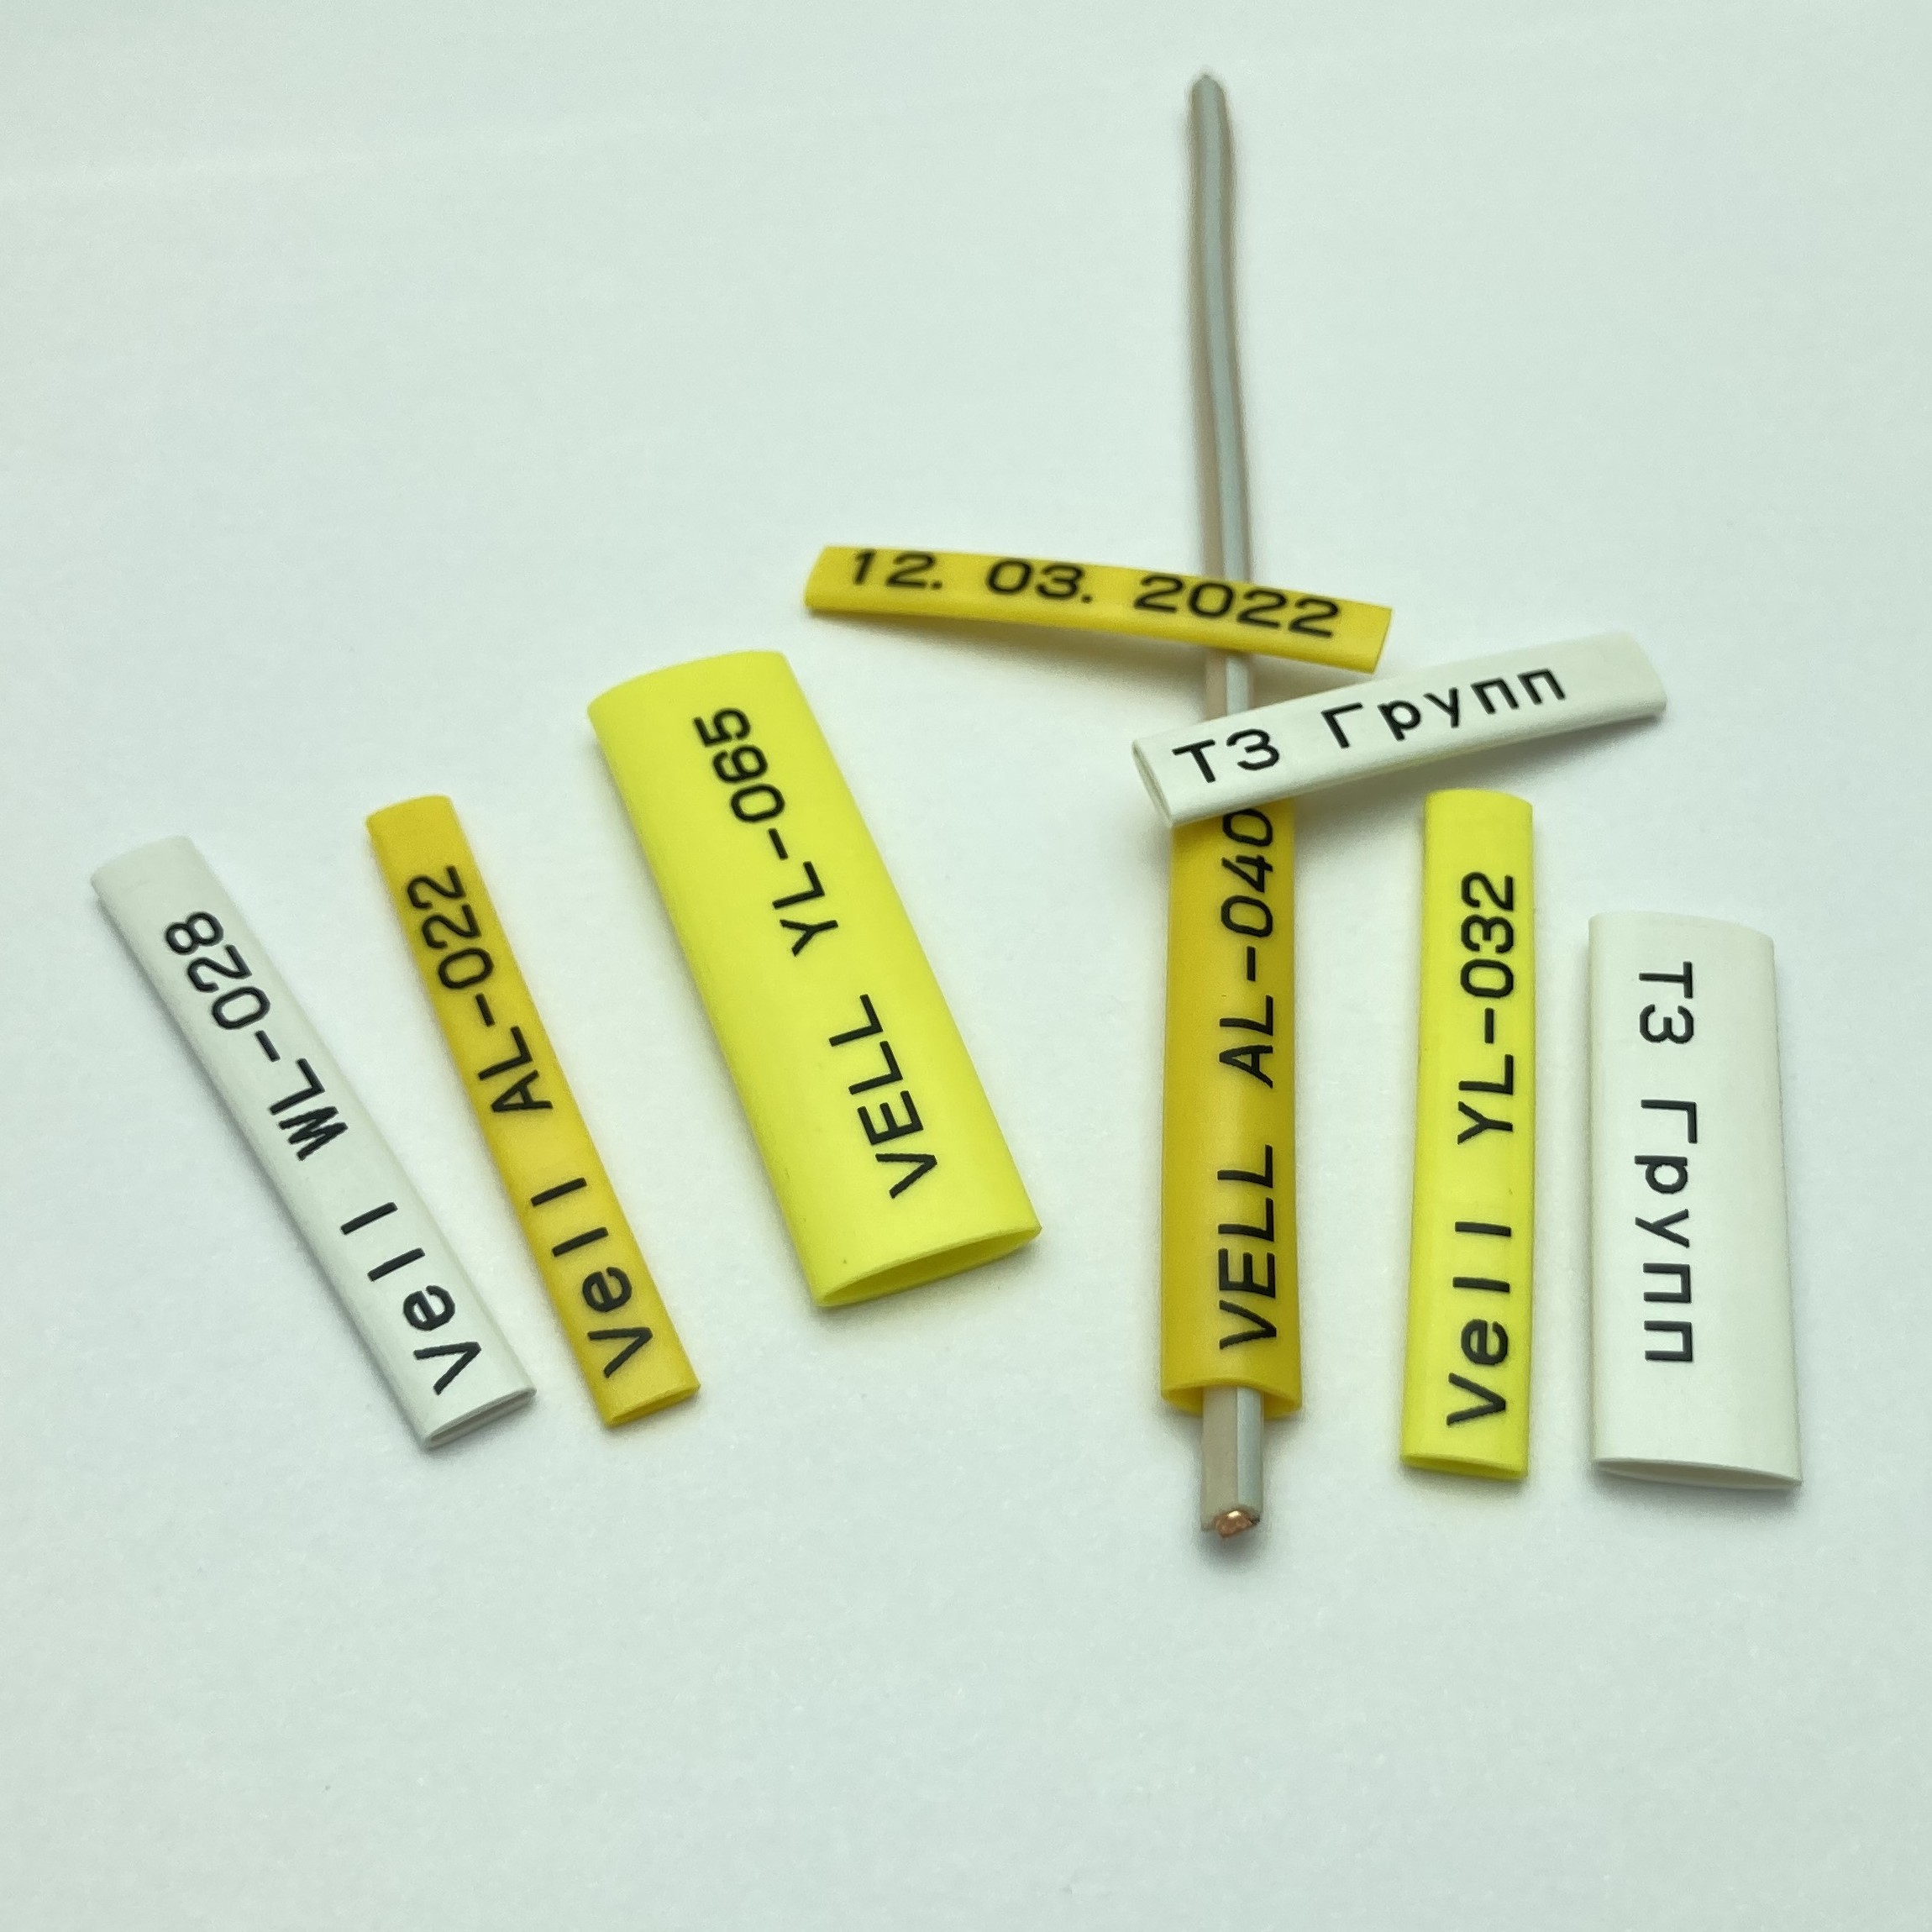 Фото Профиль ПВХ овальный Vell AL-020 для маркировки проводов, Ø 2 мм, 200 метров, янтарно-желтый (самозатухающий) {590385} (3)